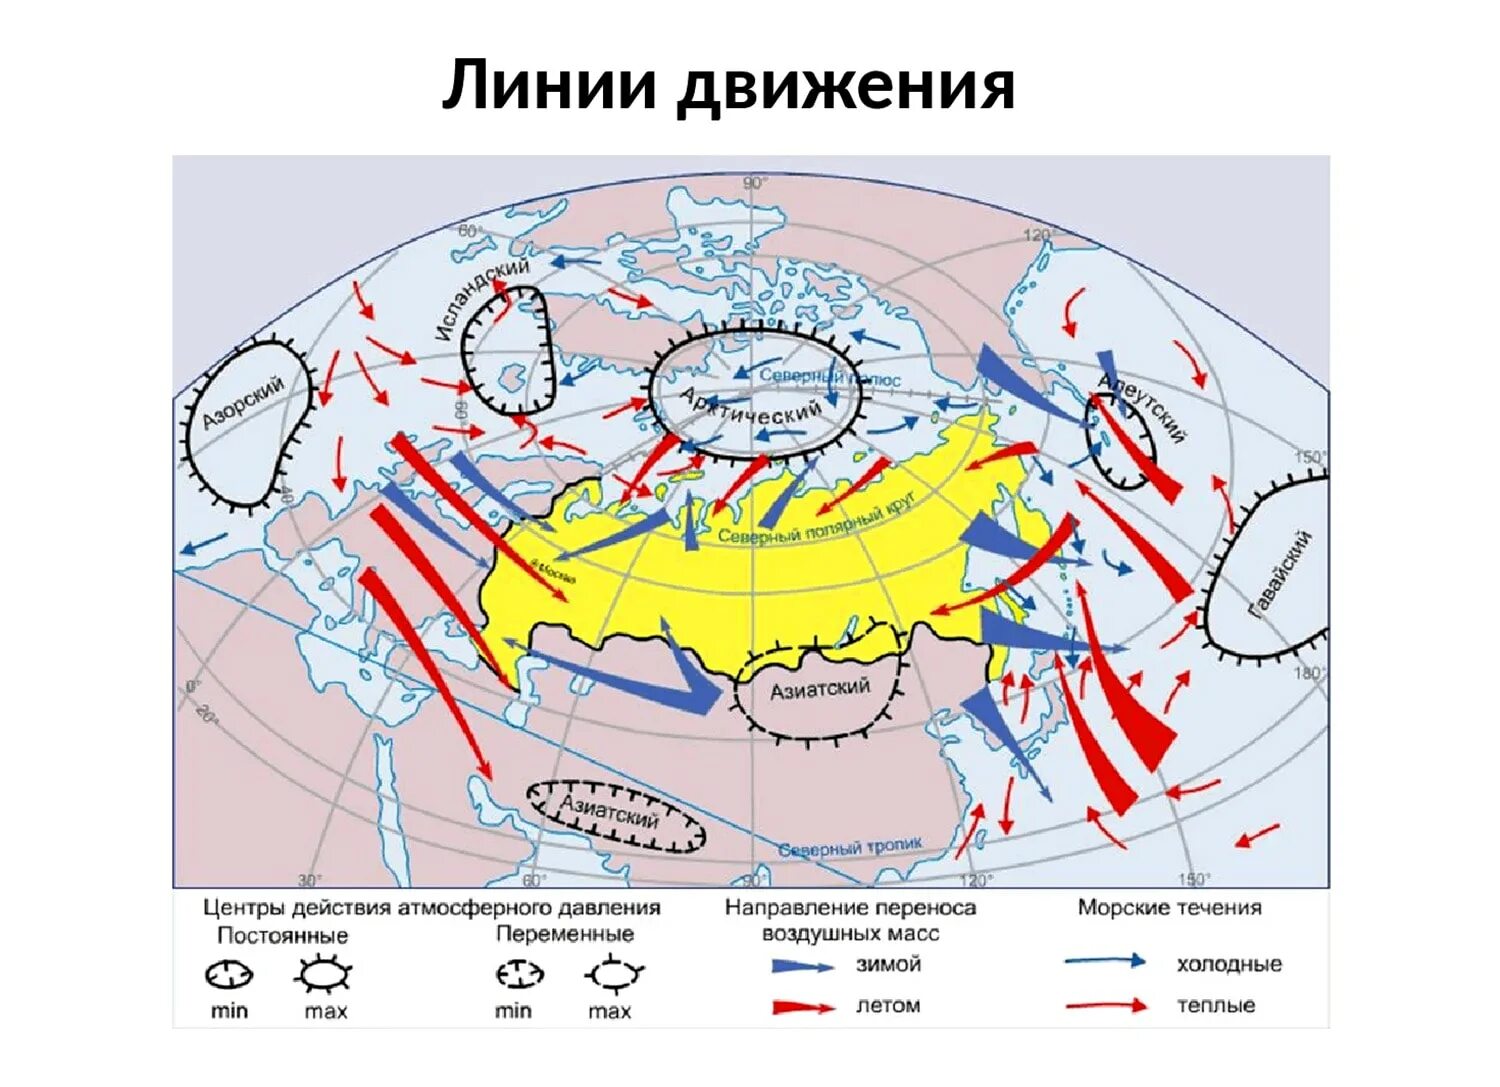 Направление ветровых течений. Карта циркуляции атмосферы России. Схема распределения воздушных масс. Воздушные массы Евразии на карте. Направление движения воздушных масс.